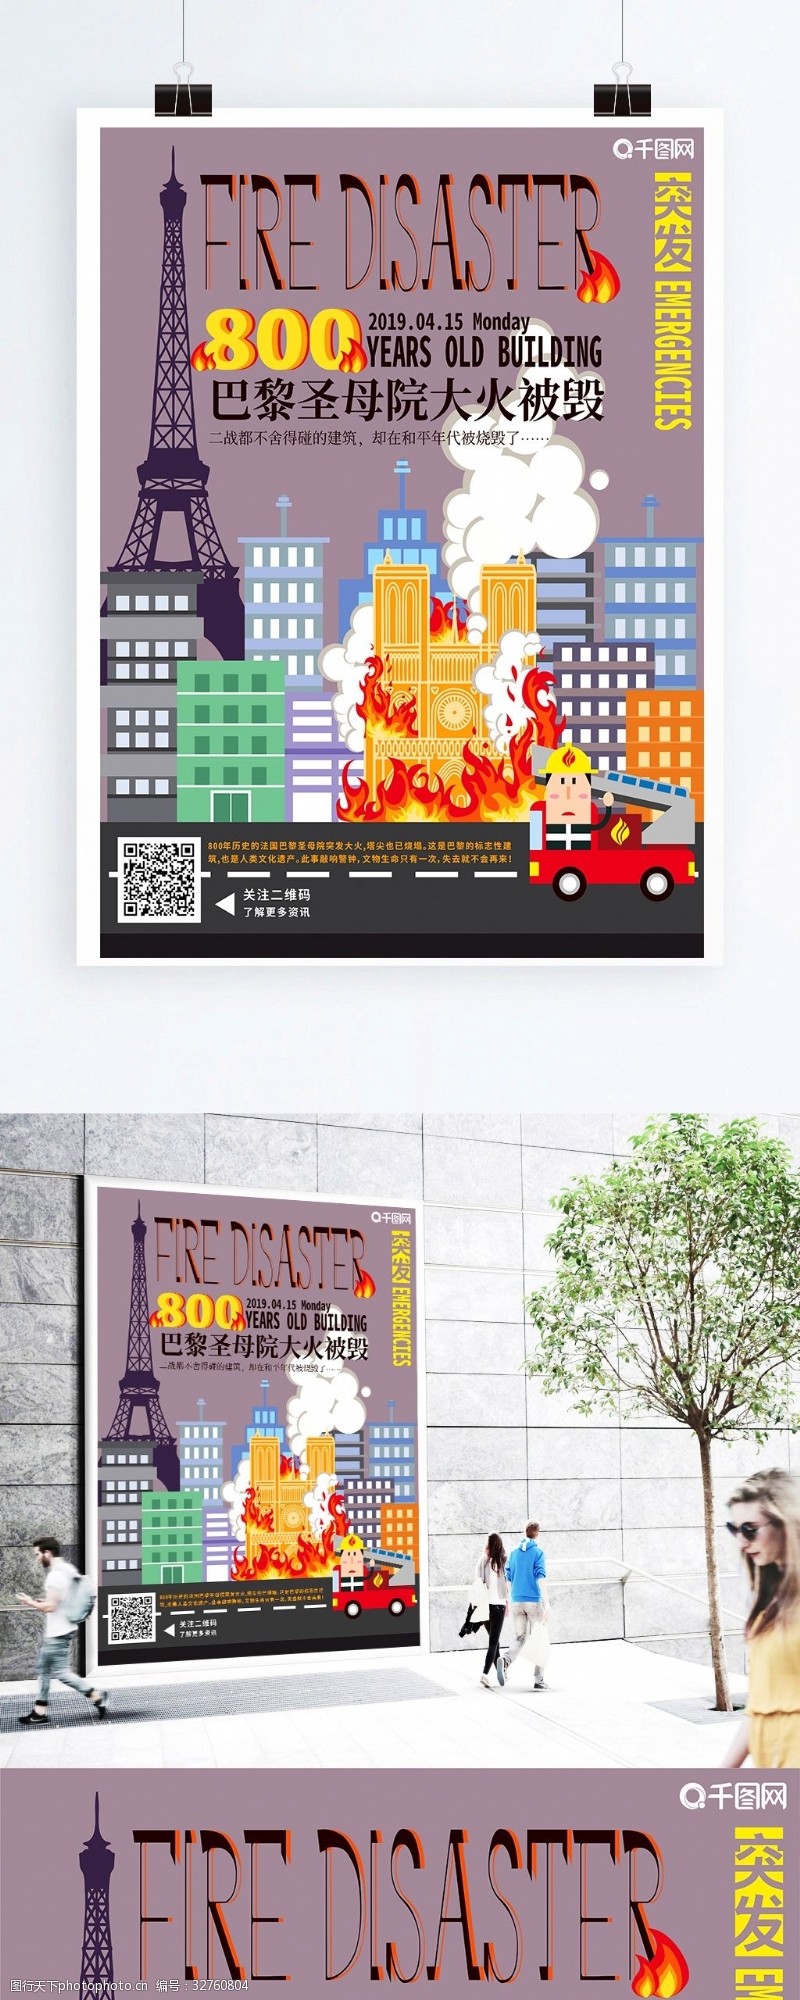 历史手绘建筑巴黎圣母院大火事件海报宣传单